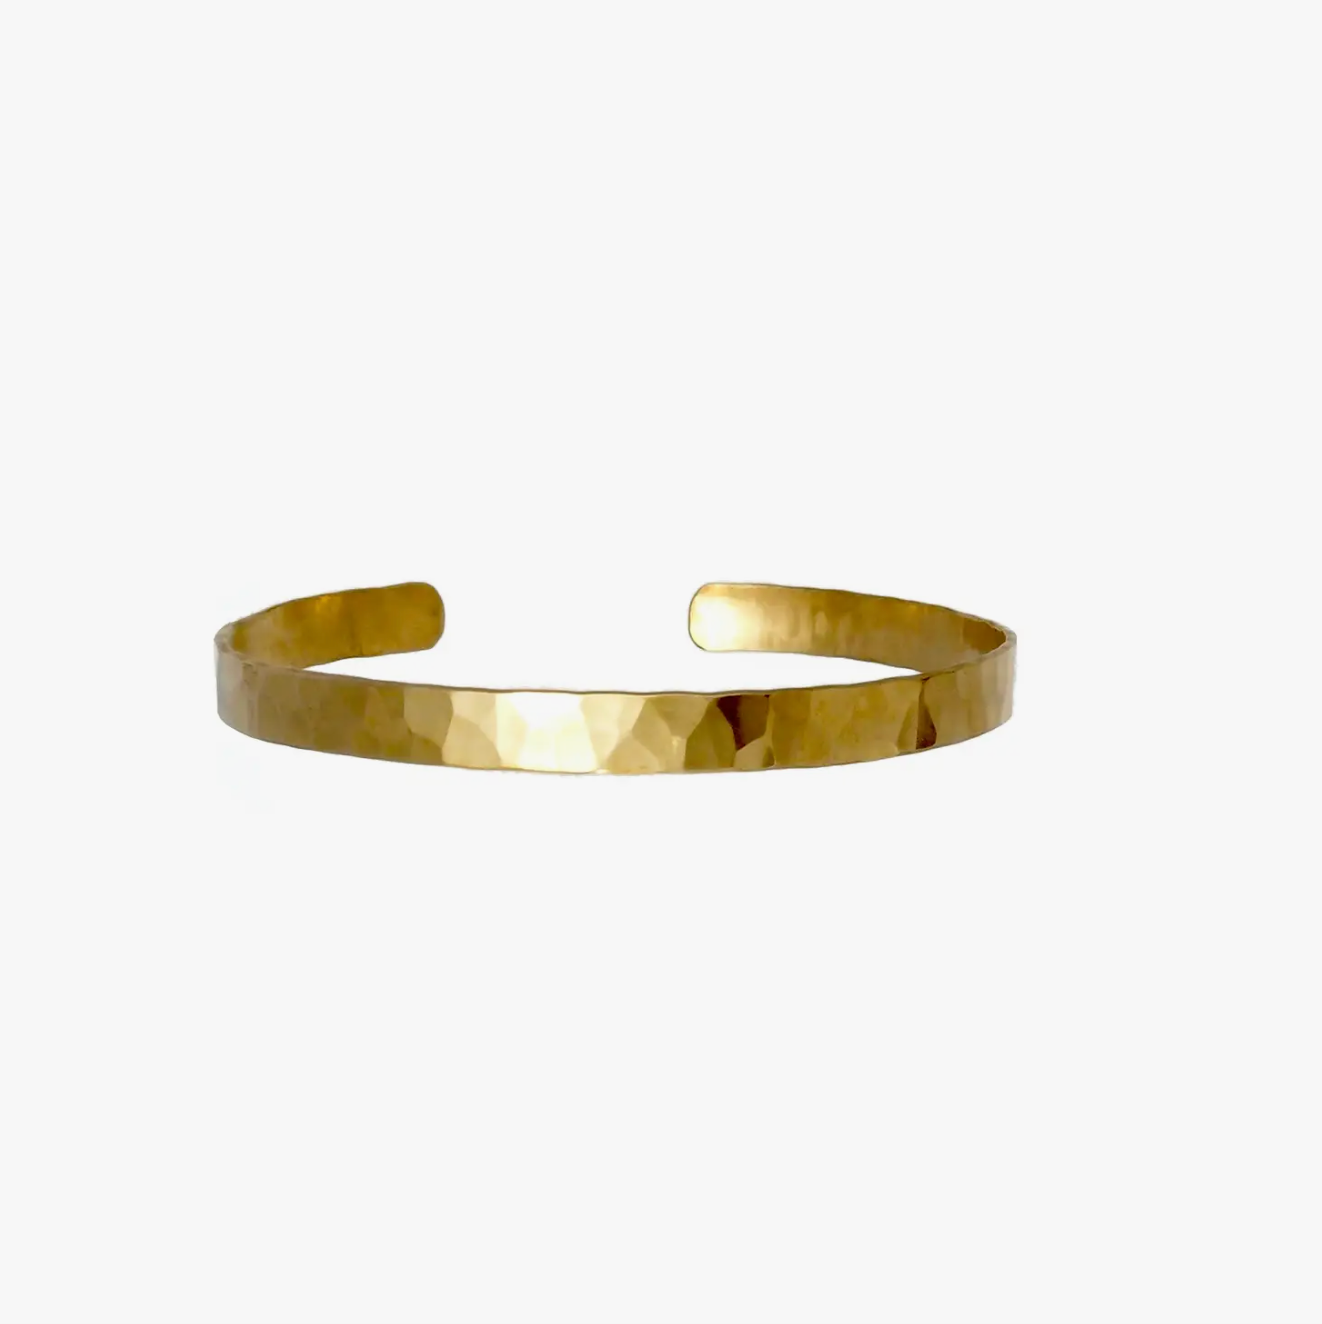 Hammered brass cuff bracelet in medium.